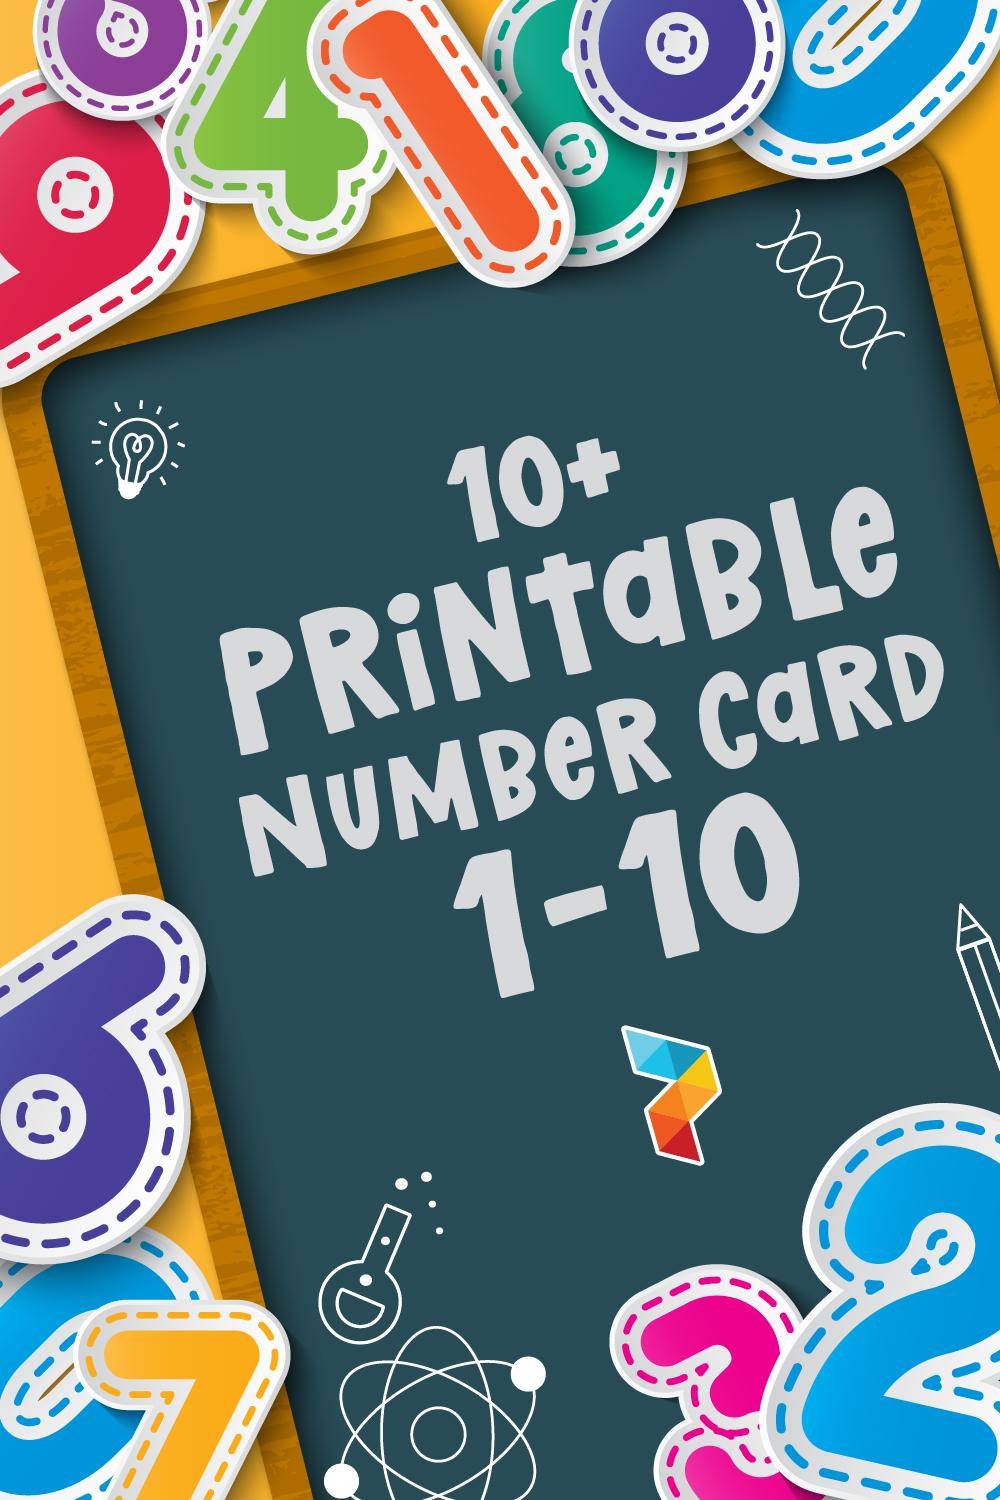 Printable Number Card 1 10